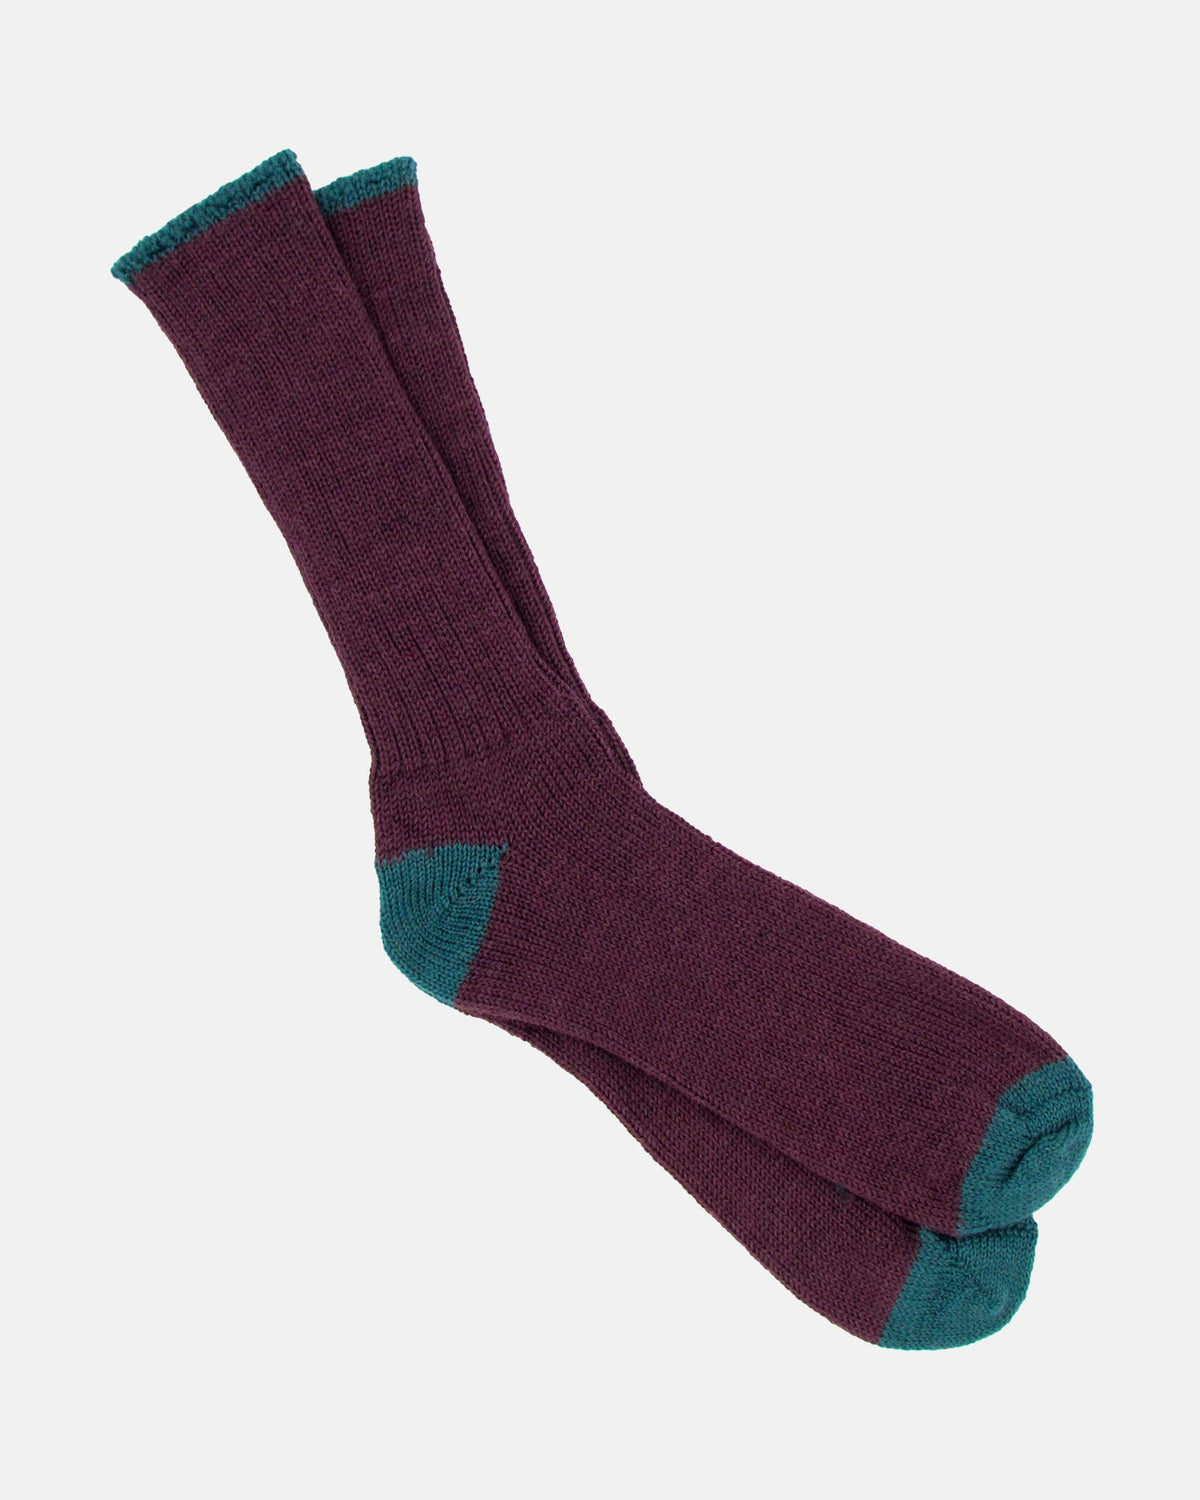 Soft Wool Socks - Aubergine/Aqua - BRIT LOCKER